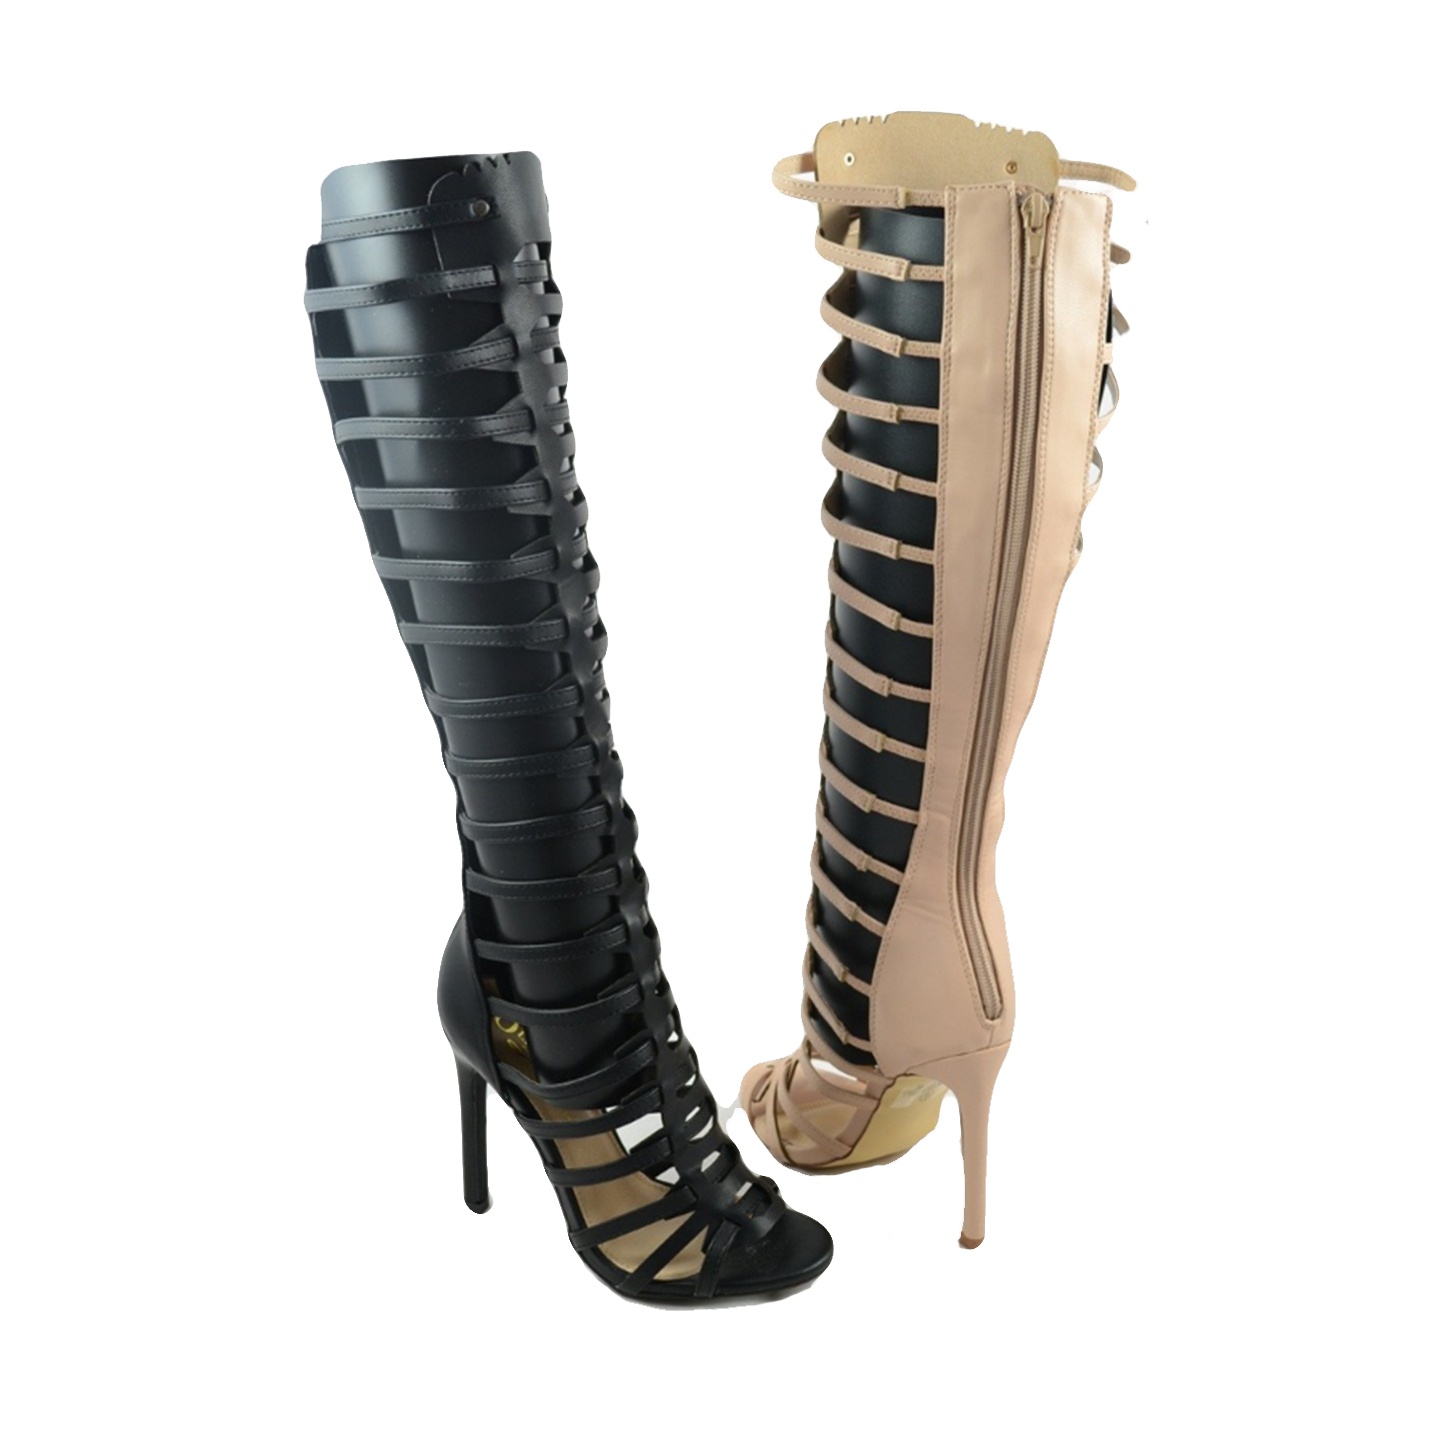 Elegant Black Gladiator Sandals For Women, Cut Out Design Stiletto Heeled  Zipper Back Sandals